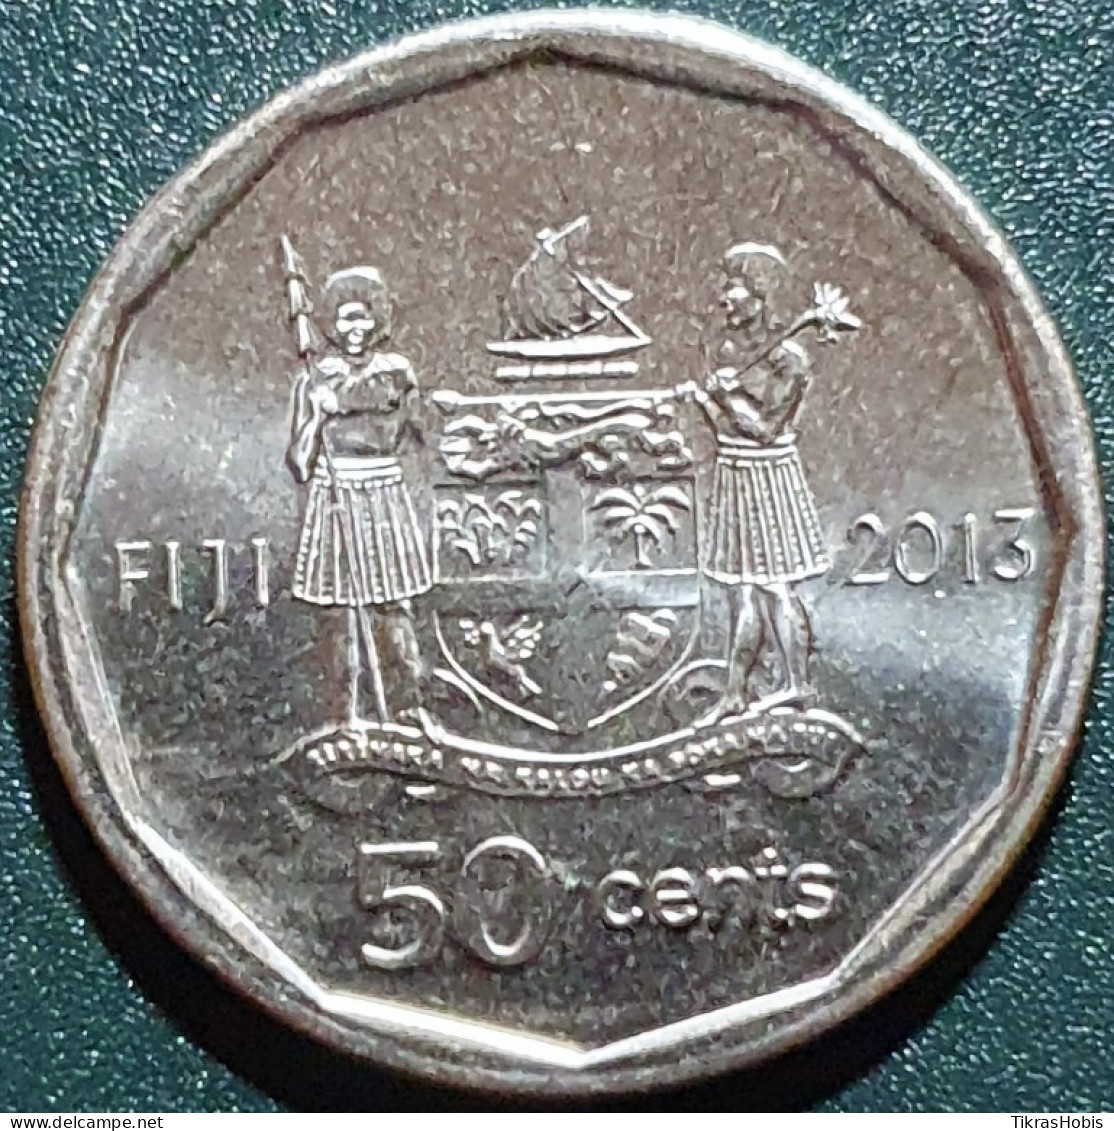 Fiji 50 Cents, 2013 Iliesa Delana KM515 - Fidschi